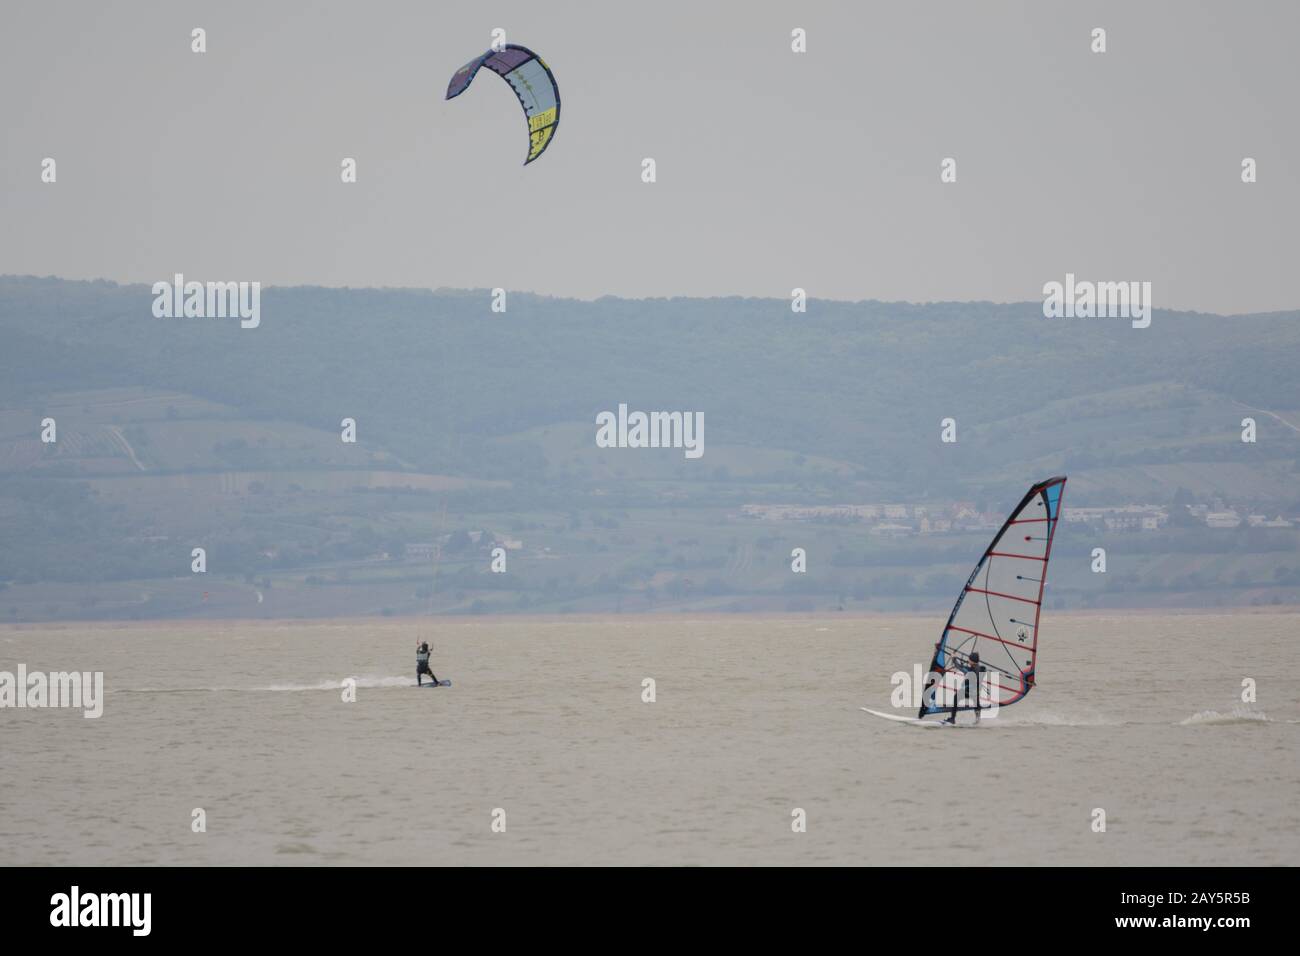 Surfen in verschiedenen Formen - Kitesurfing und Windsurfen am Neusiedler See Stockfoto